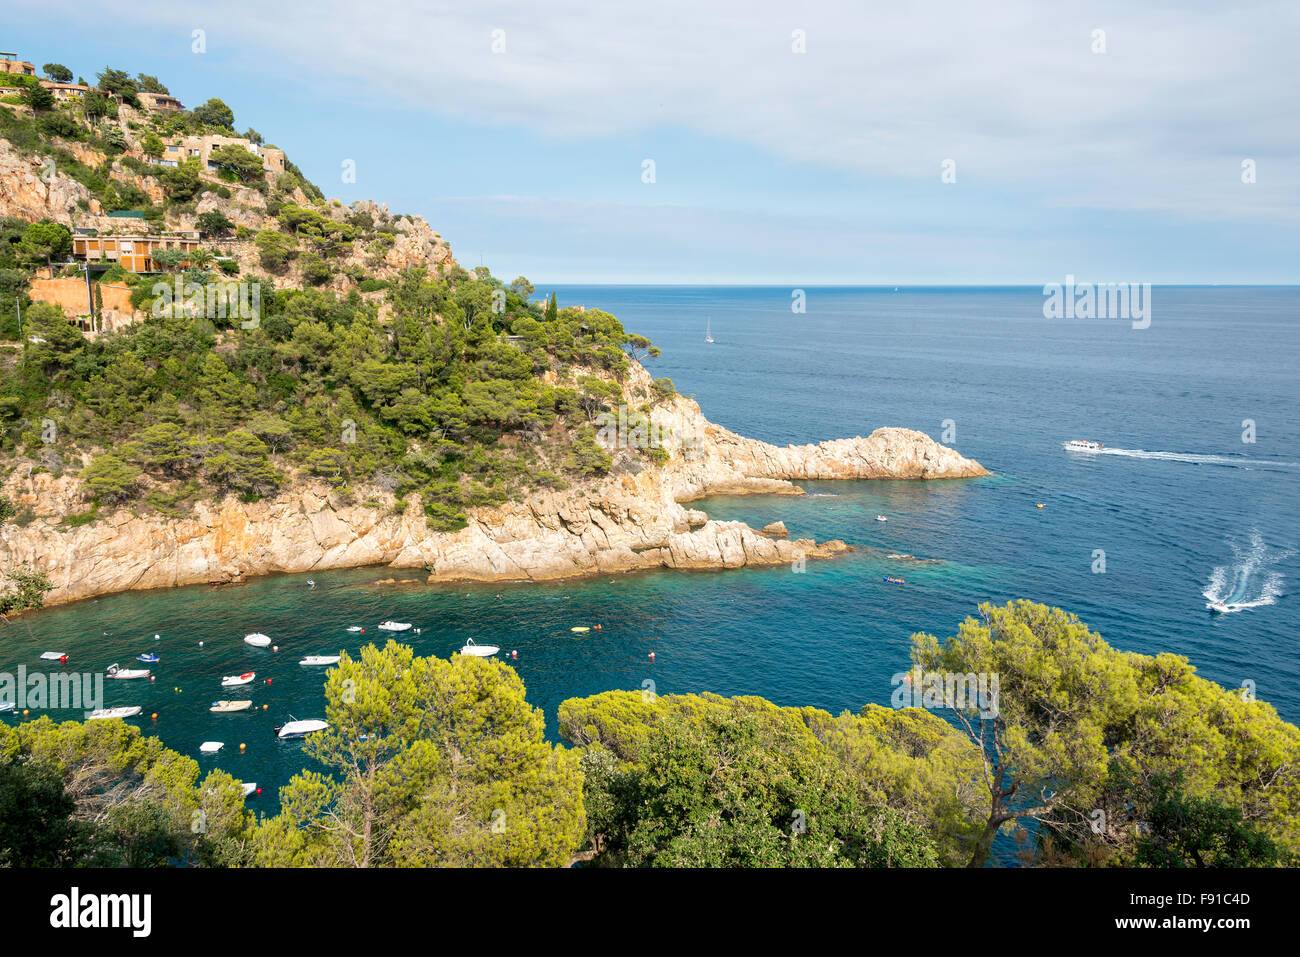 Coastal view near Tossa de Mar, Costa Brava, Province of Girona, Catalonia, Spain Stock Photo